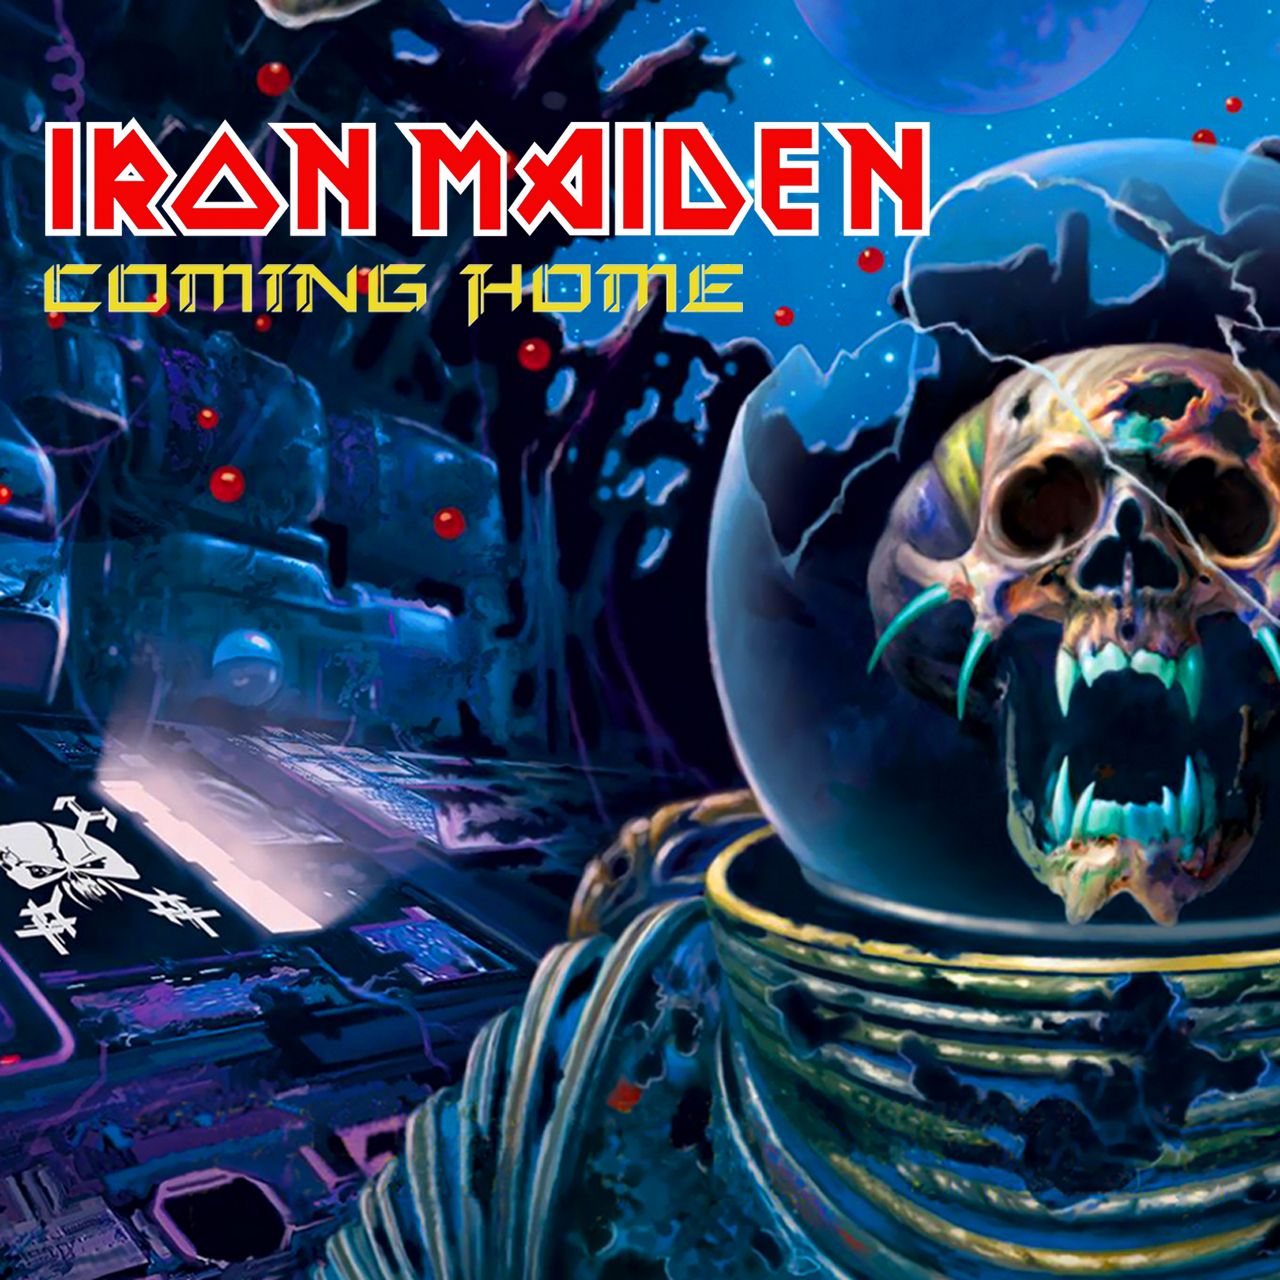 Iron Maiden. 